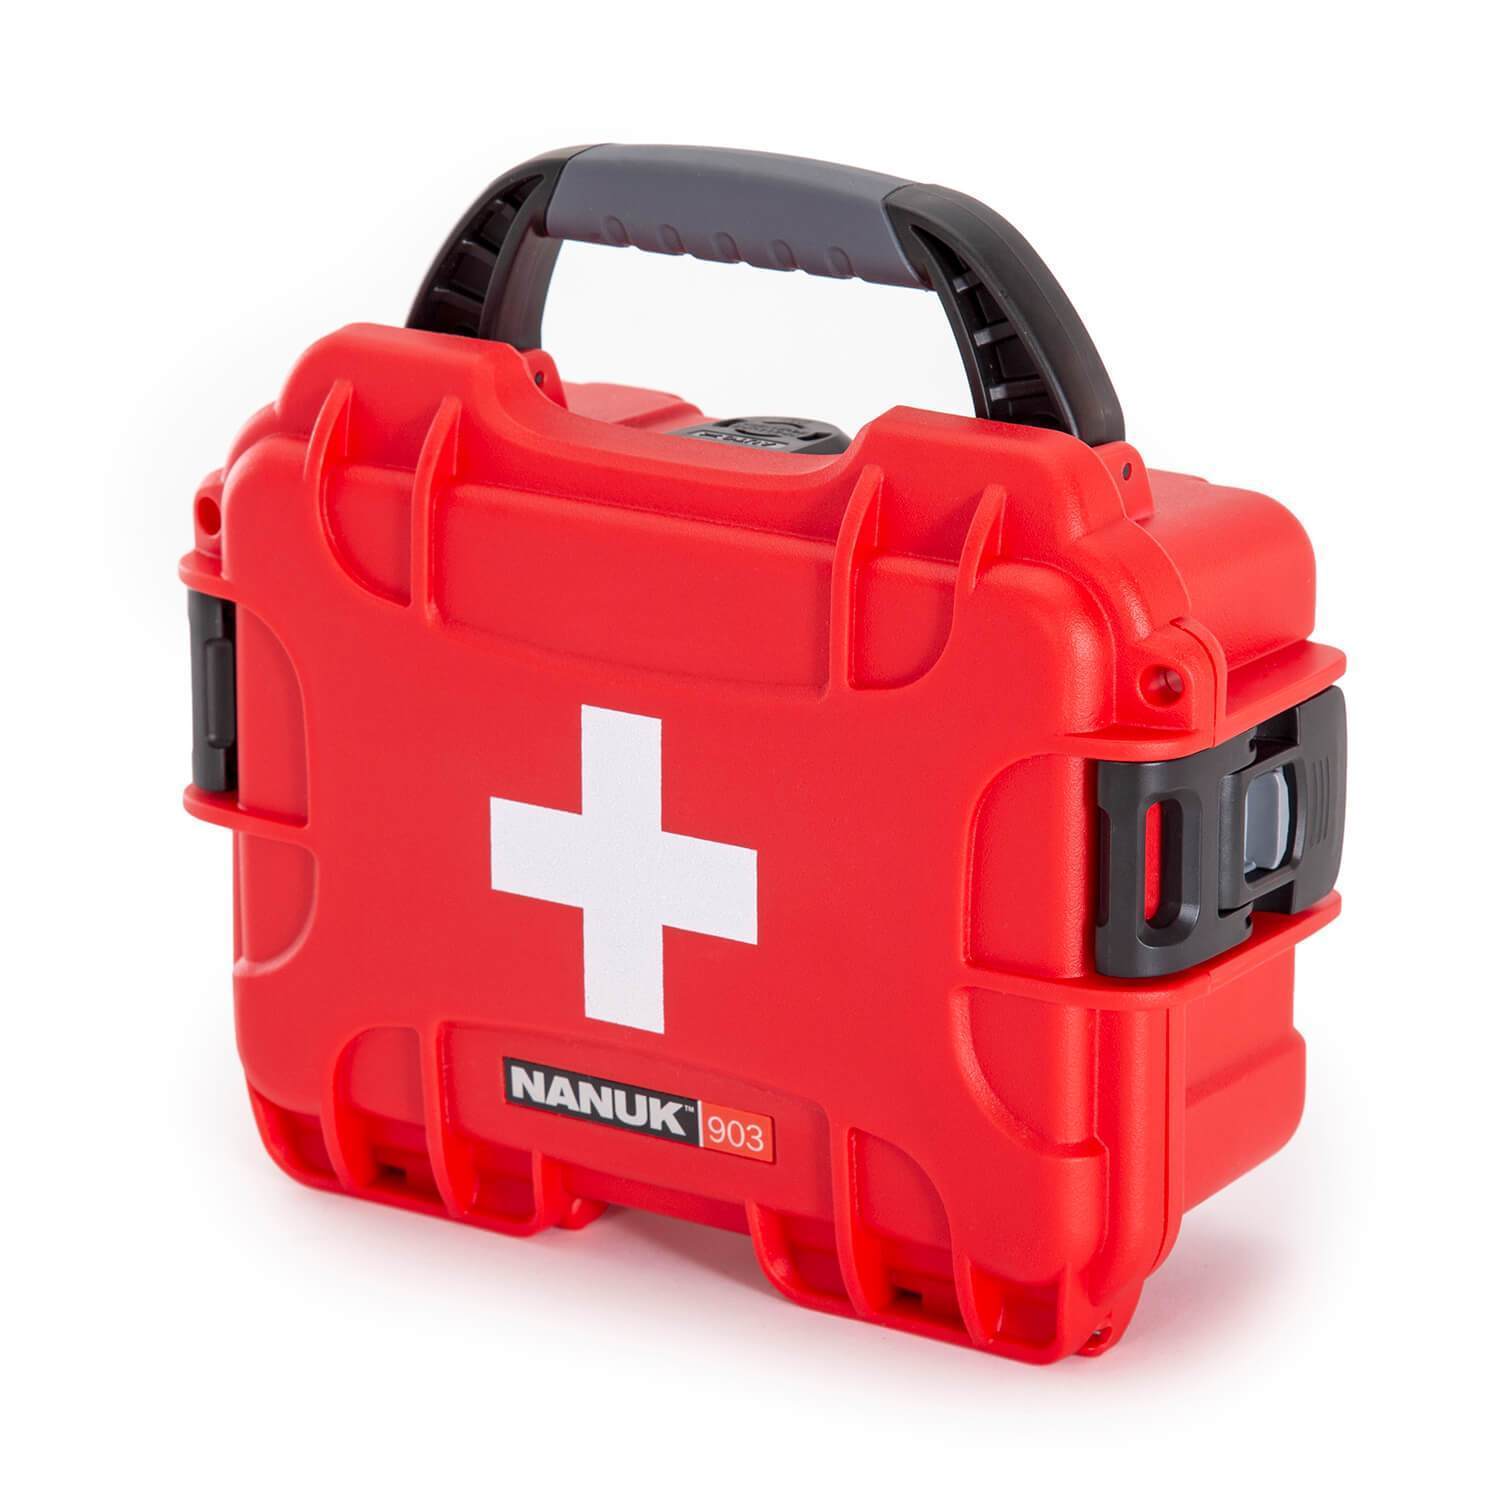 NANUK 903 valise de premiers secours - valise extérieur - Rouge - NANUK